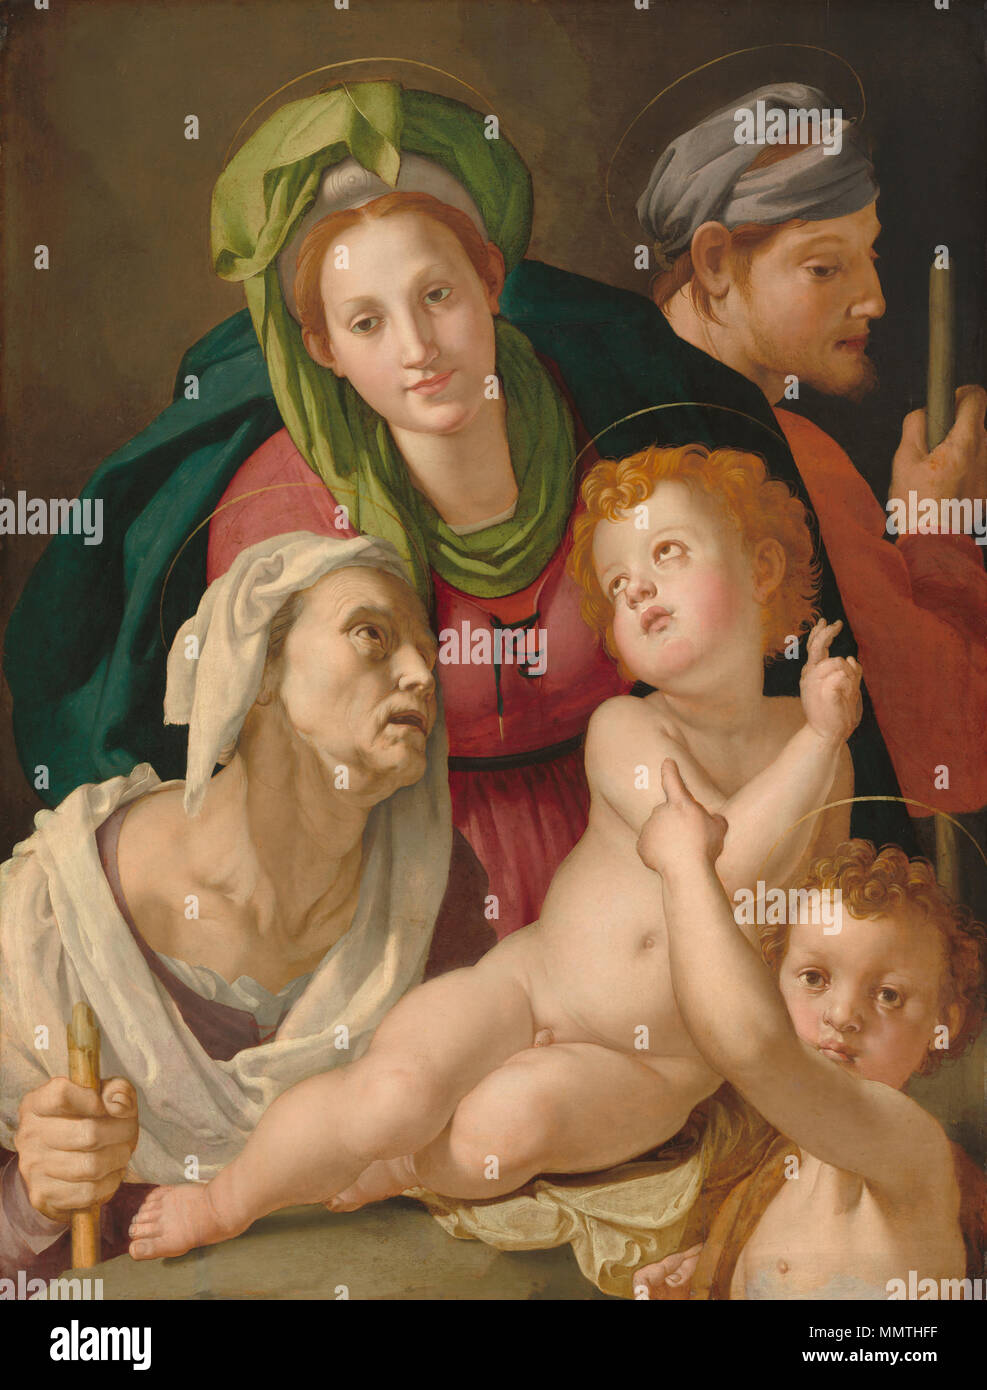 Peinture huile sur panneau ; total : 101,3 x 78,7 cm (39 7/8 x 31 in.) : 147,3 x 123,2 encadrée x 8,9 cm (58 x 48 1/2 x 3 1/2 in.) ; Bronzino la Sainte Famille NGA Banque D'Images